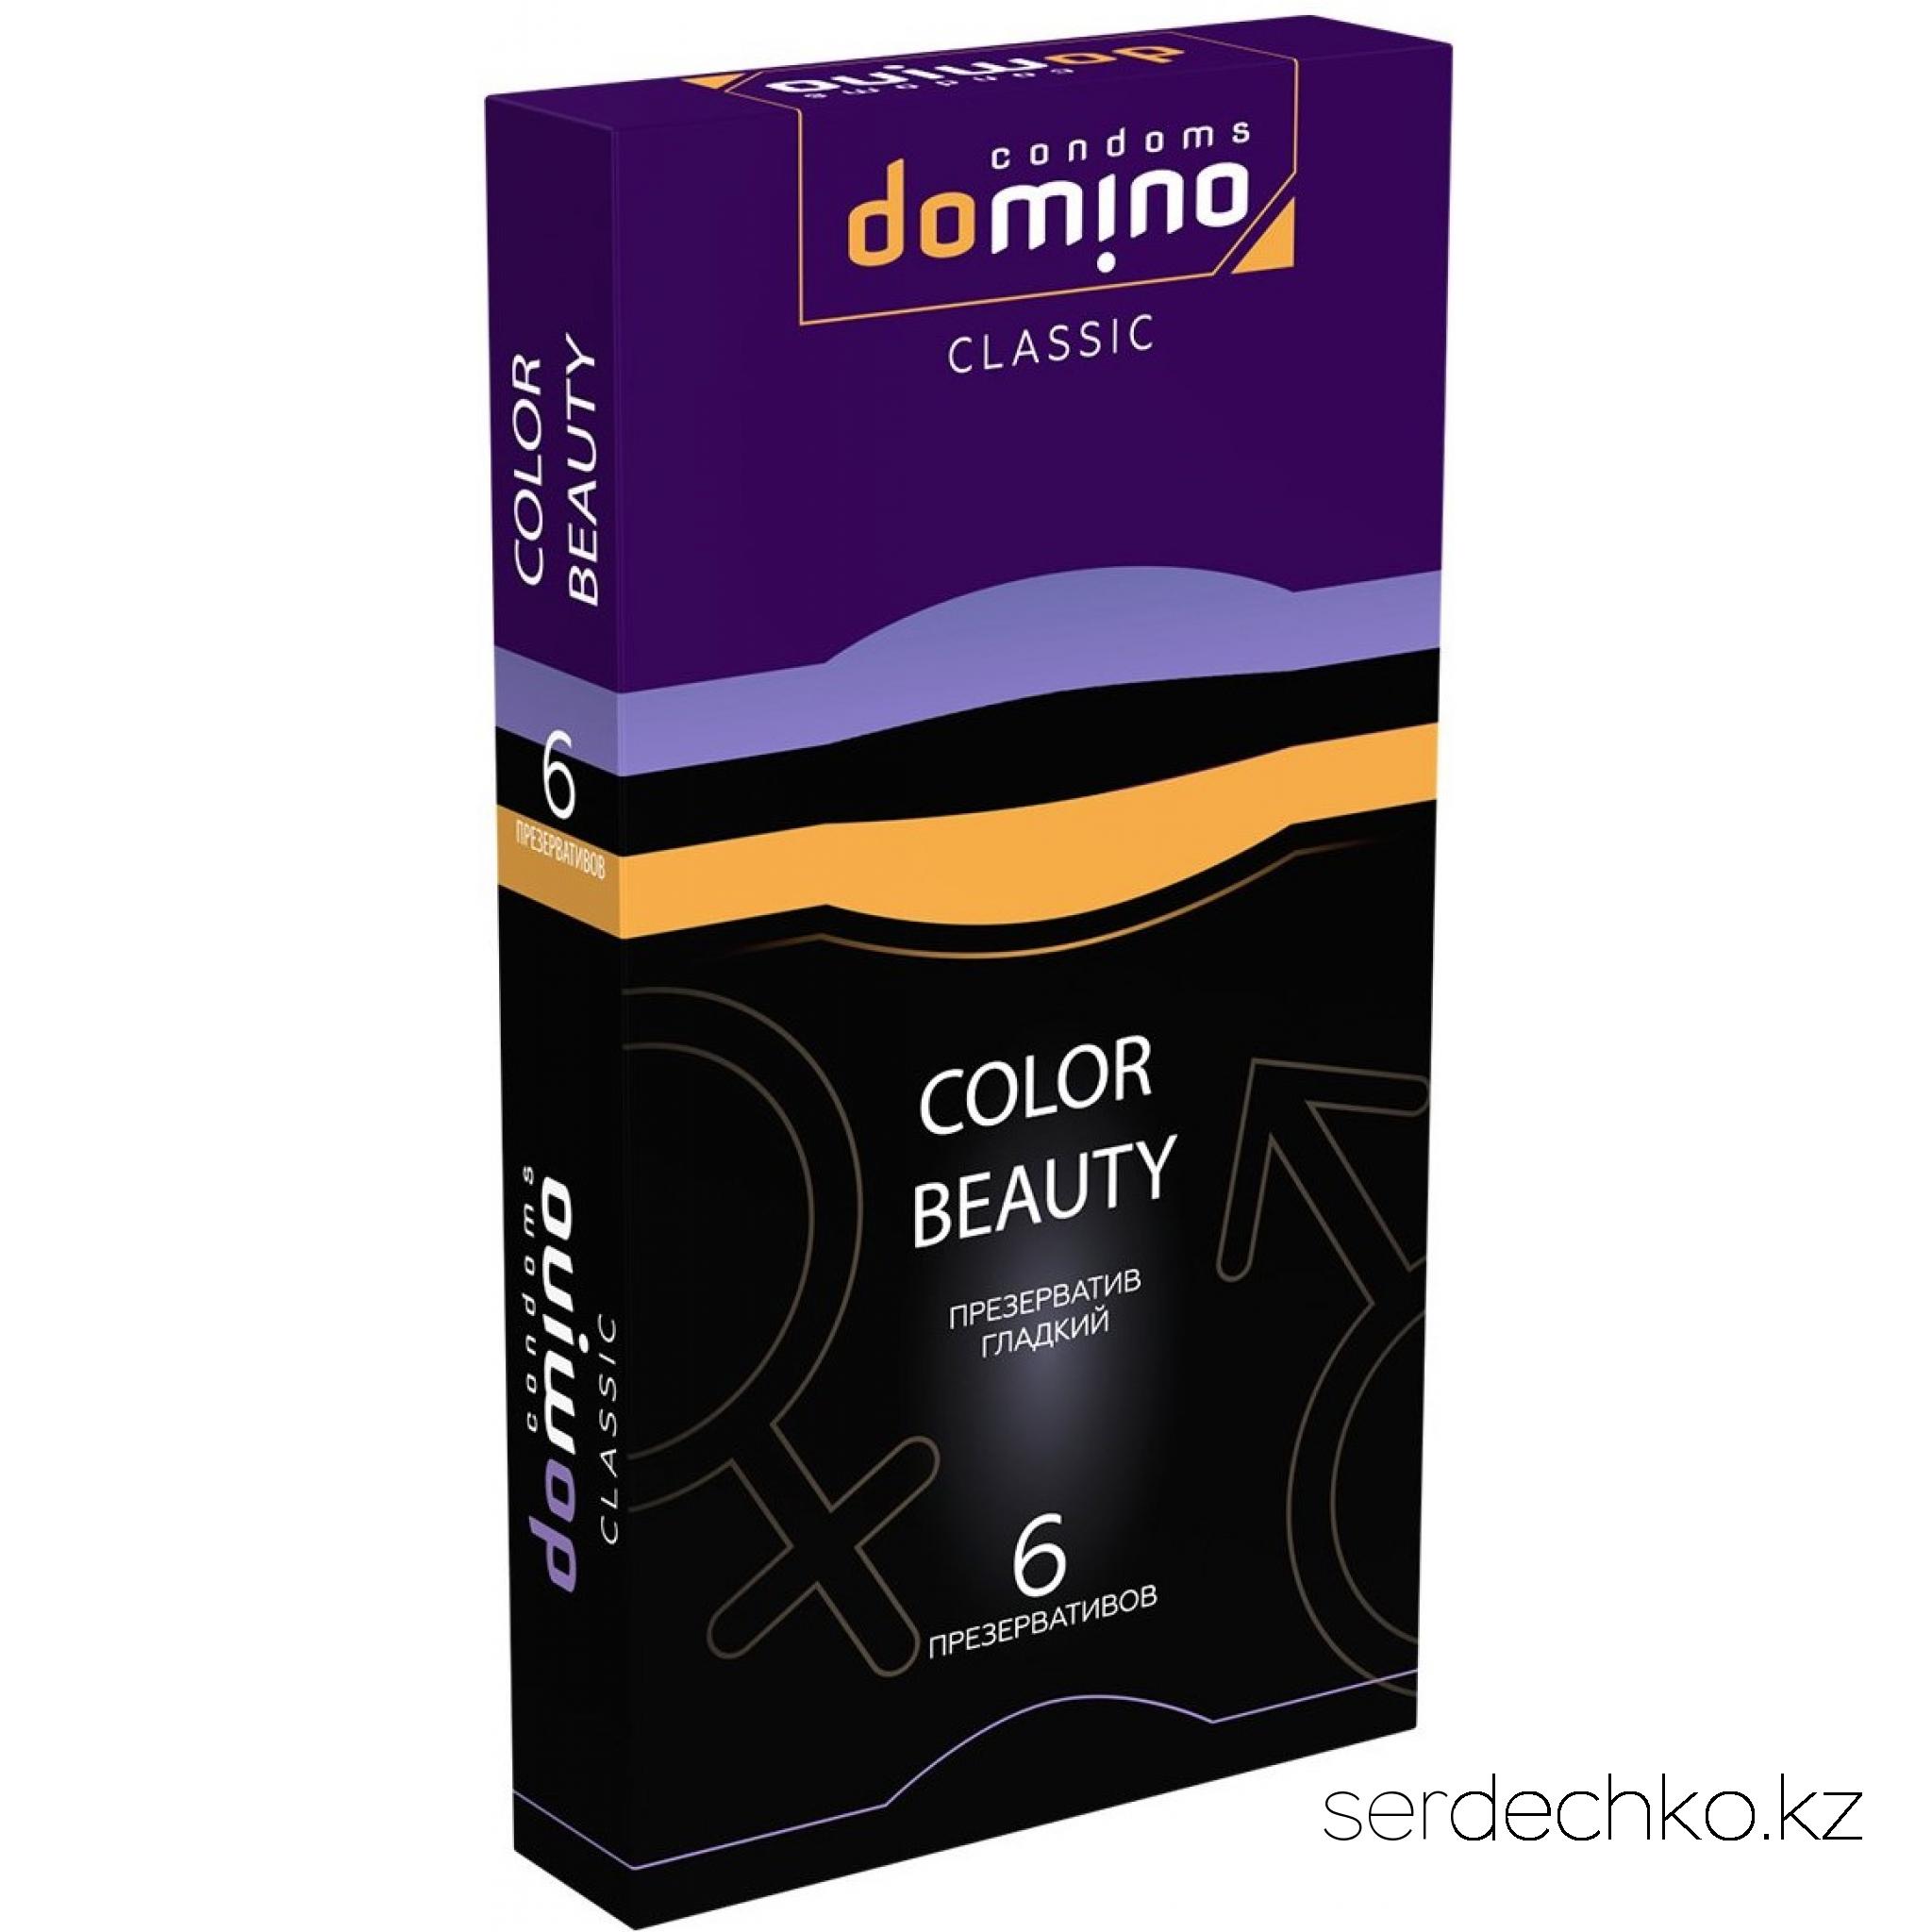 ПРЕЗЕРВАТИВЫ DOMINO CLASSIC COLOUR BEAUTY 6 штук, 
	Гладкие разноцветные презервативы из высококачественного латекса, чтобы вы совершали подвиги целую ночь! В каждой фирменной упаковке содержится 6 презервативов (фиолетовый х2, черный х2 и золотой х2) из латекса в смазке.
	Длина, мм    +/-180
	Толщина стенок, мм.    0,06
	Ширина, мм    +/-52
